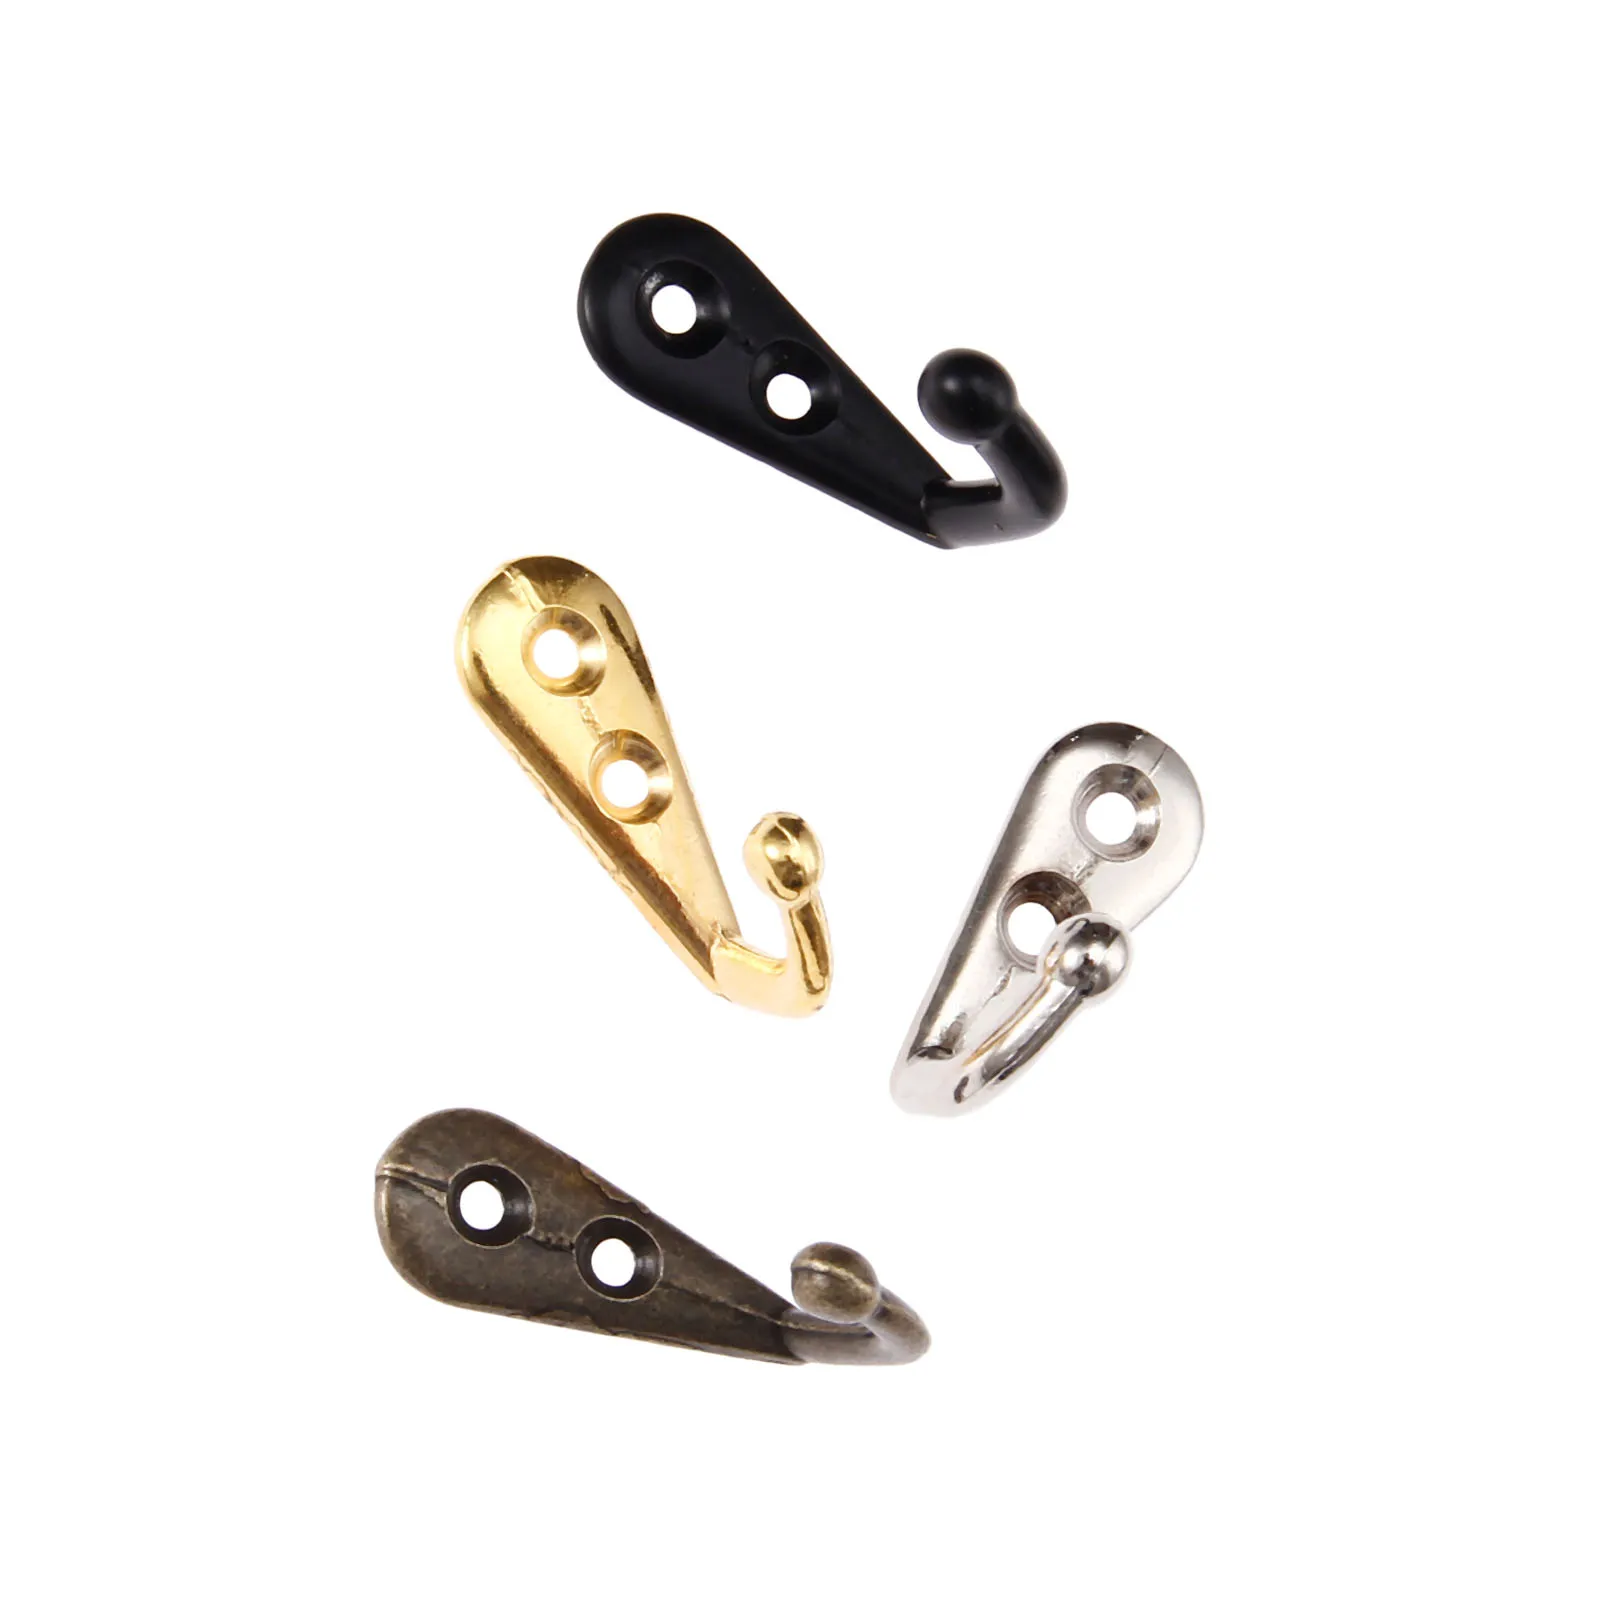 5sets Hooks Wall Mounted Hanger w/screws Black/Gold/Silver/Antique bronze Coat/Key/Bag/Towel/Hat Holder Decor Bathroom Kitchen images - 6